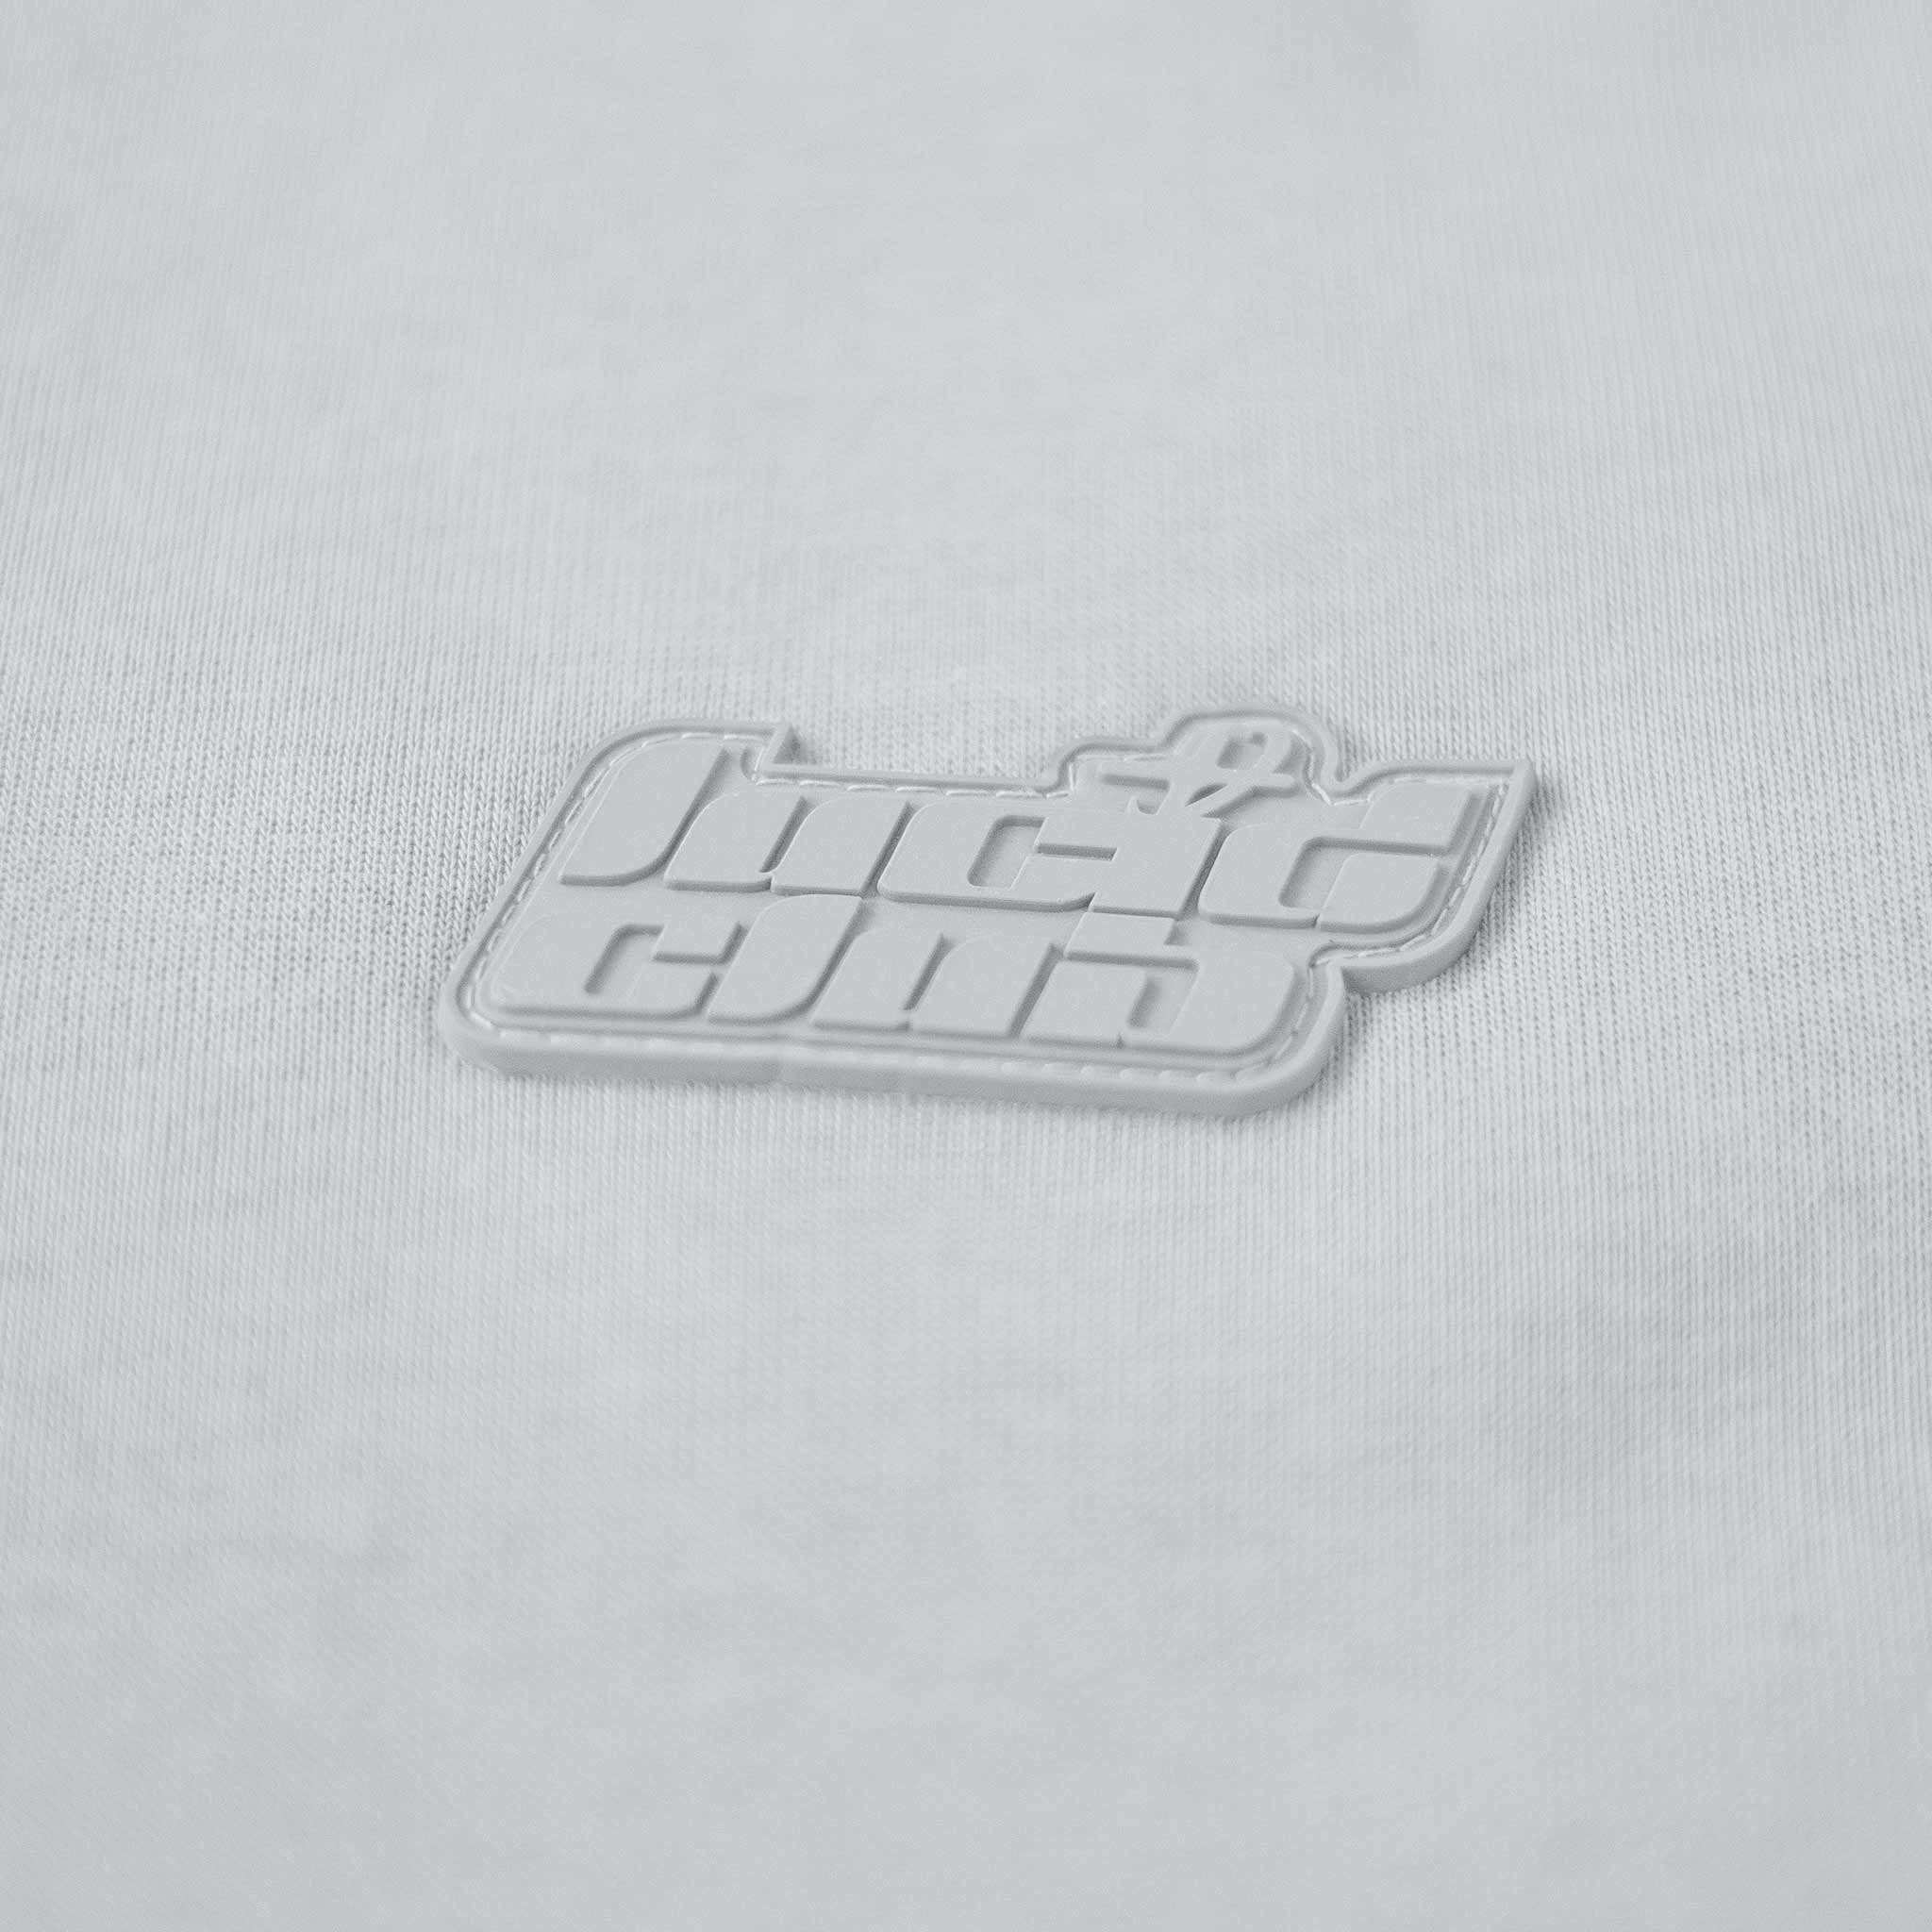 LOA Sweatpants "Grey" - Lucid Club